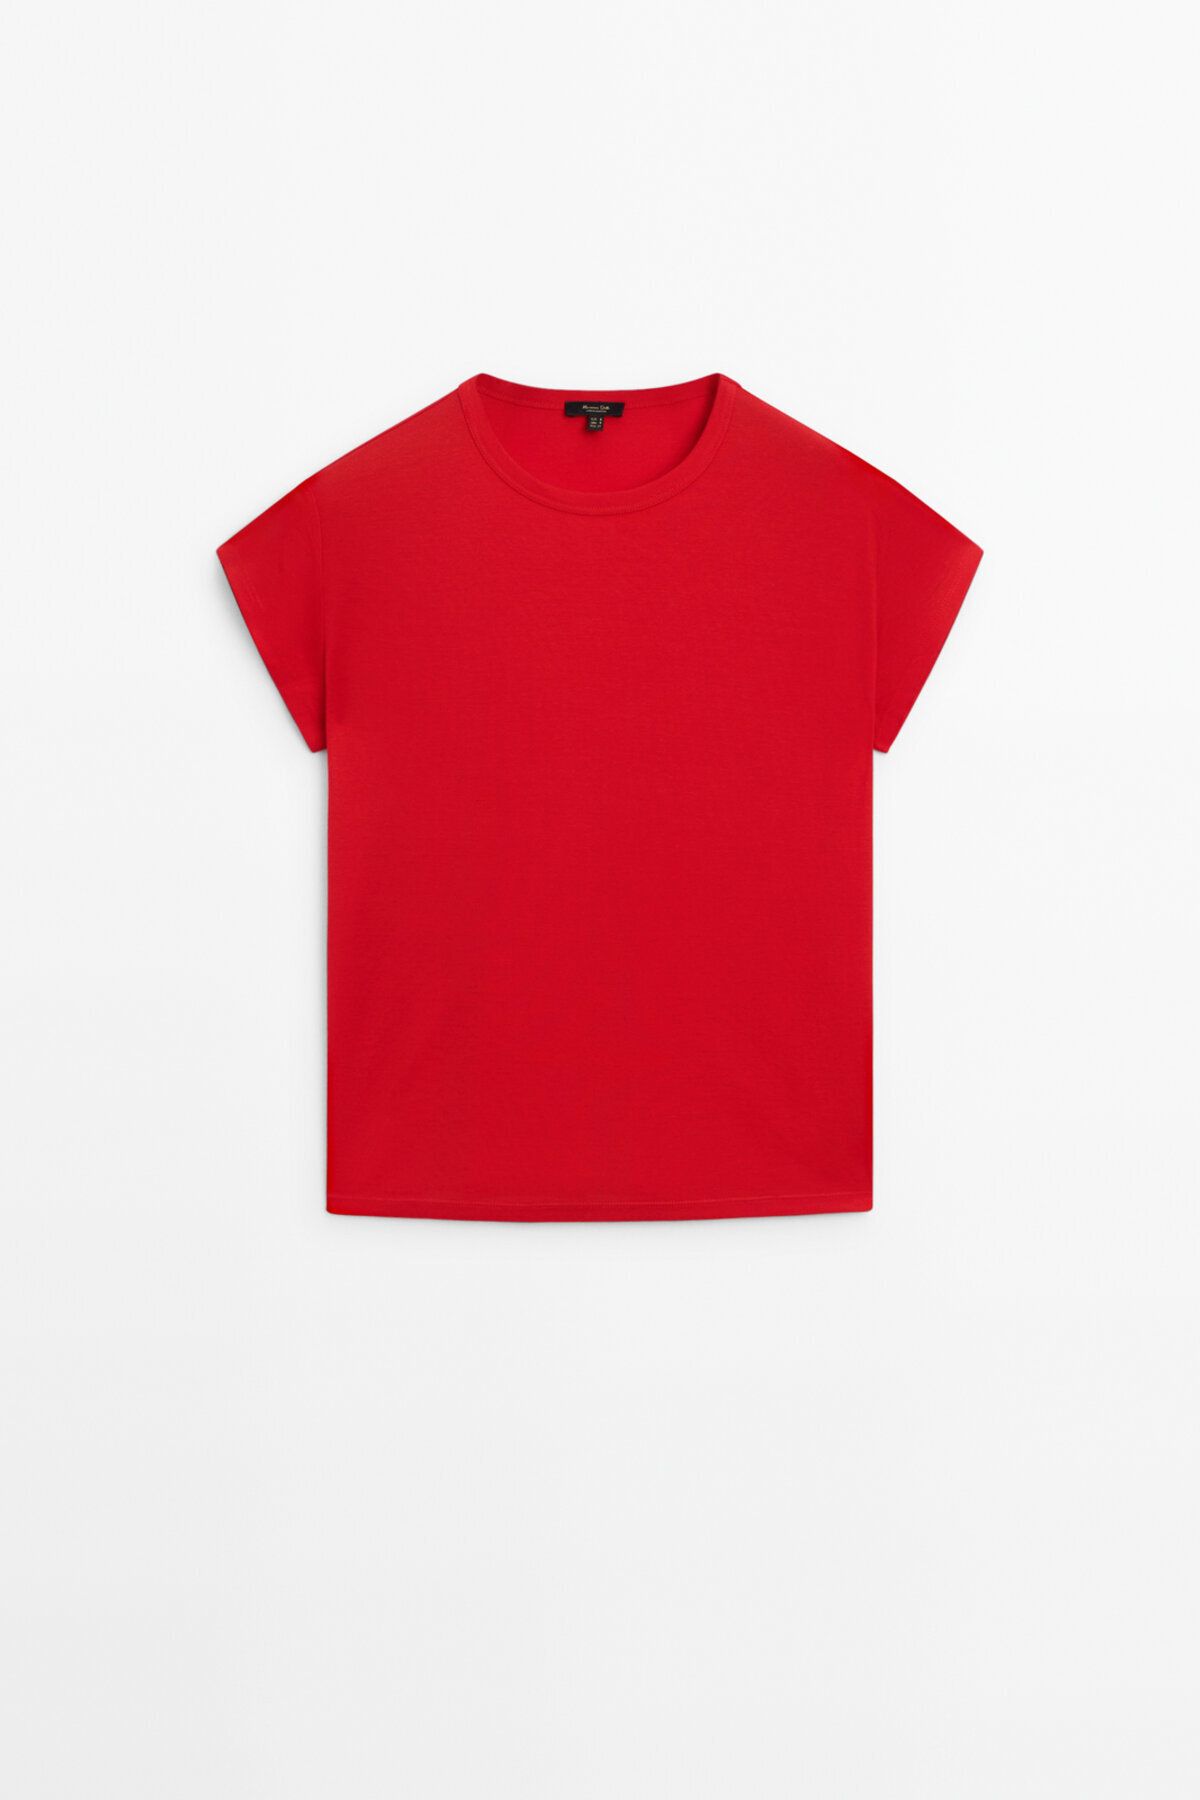 Massimo Dutti Kısa kollu merserize pamuklu t-shirt